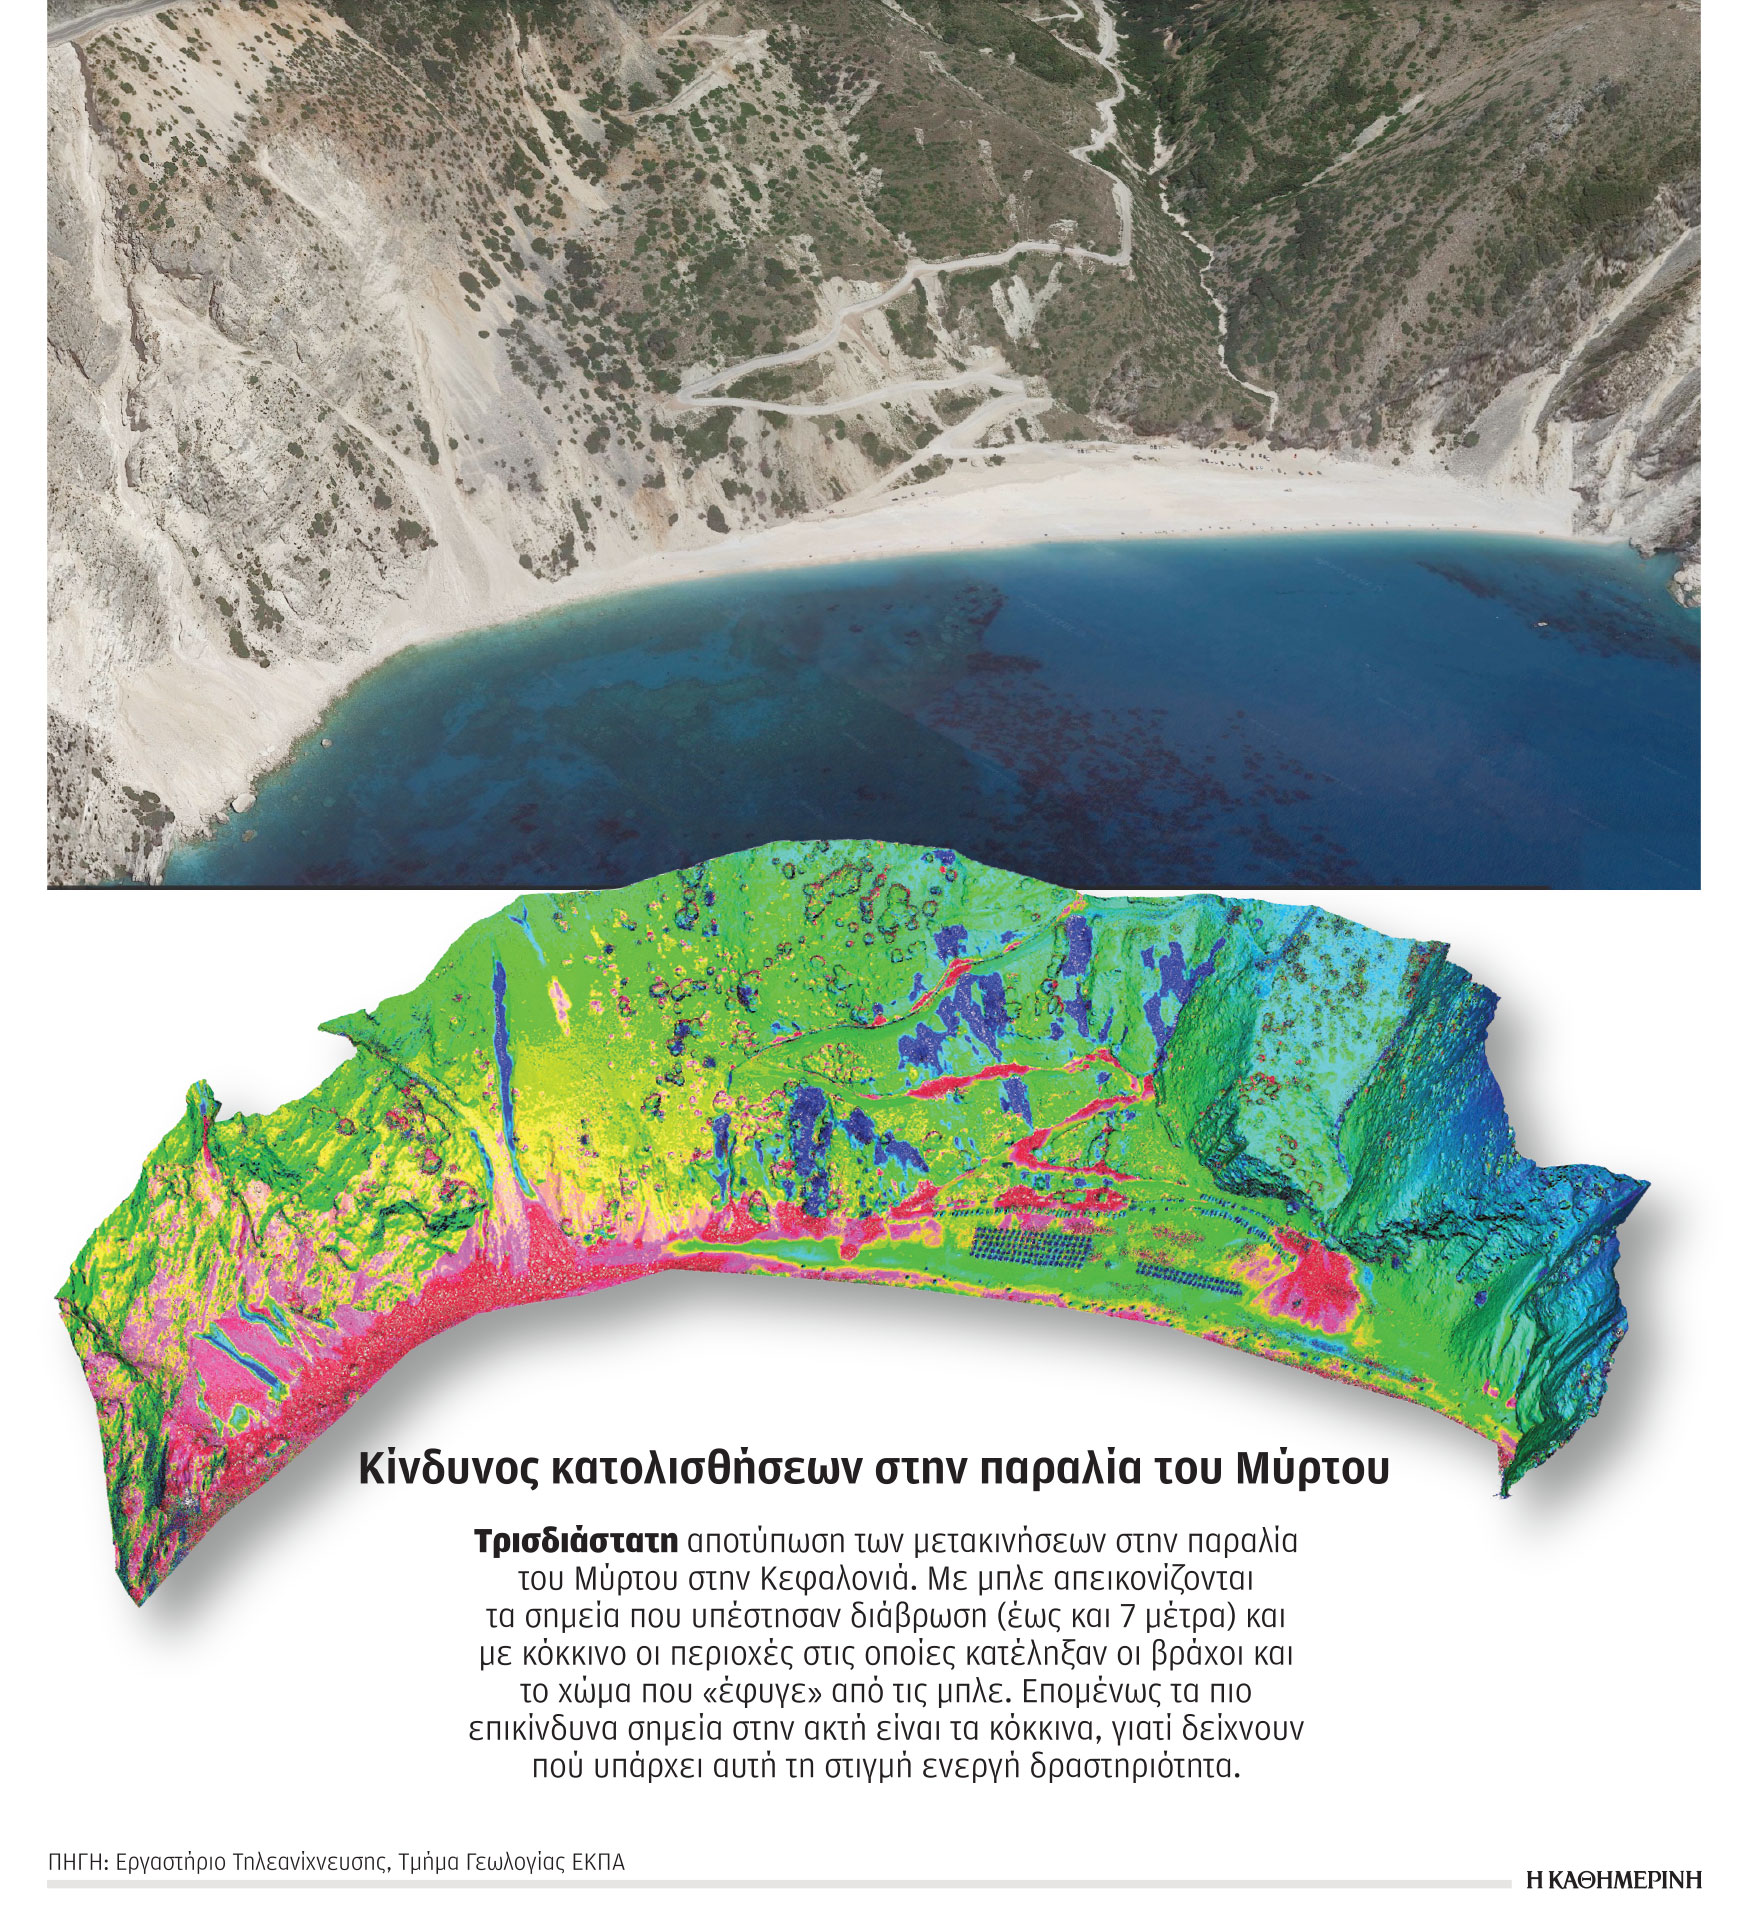 Επιστημονική έρευνα για παραλίες: Κλειστό το Ναυάγιο, περιορισμοί στο Πόρτο Κατσίκι-1